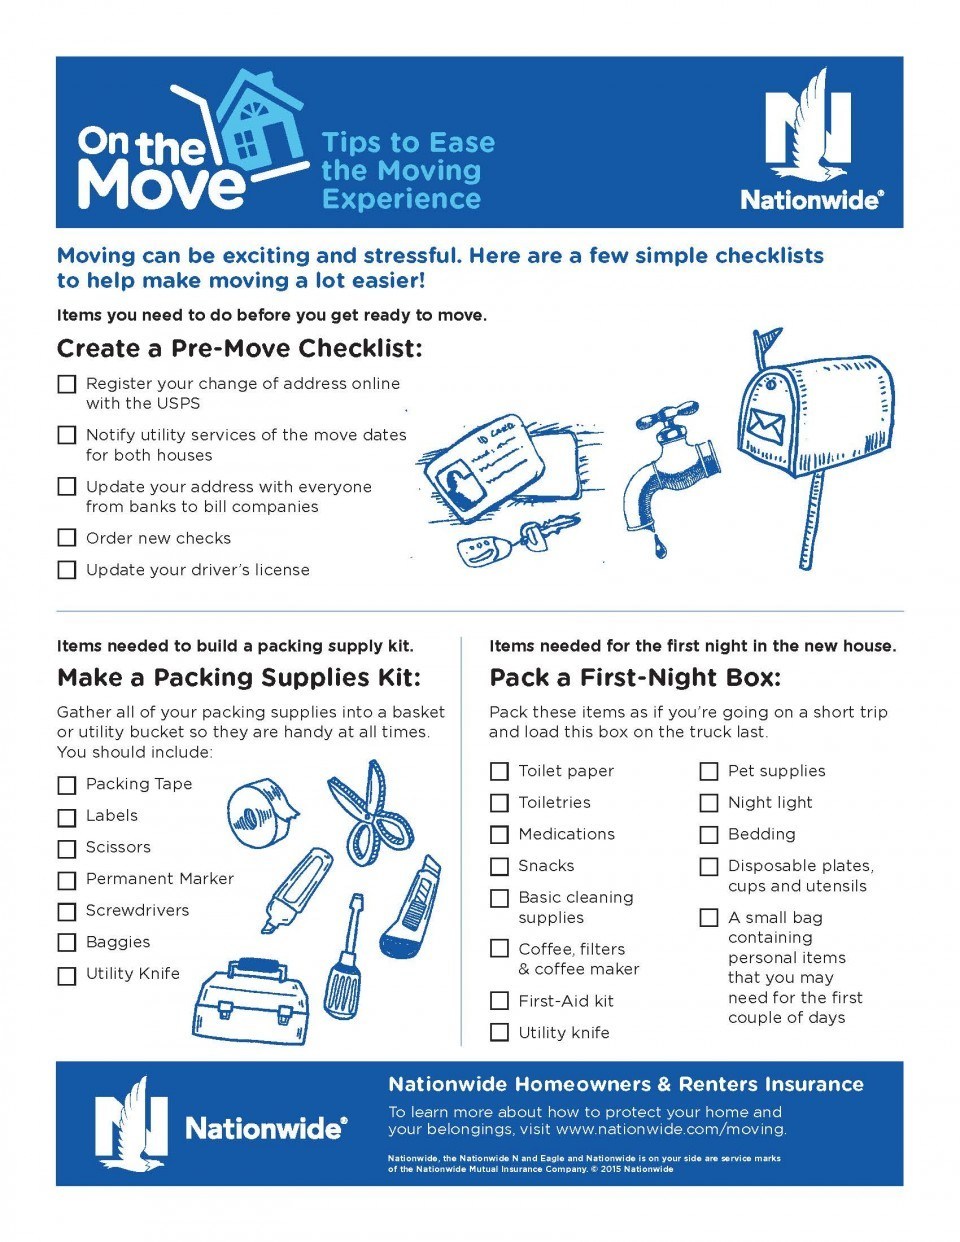 local moving checklist